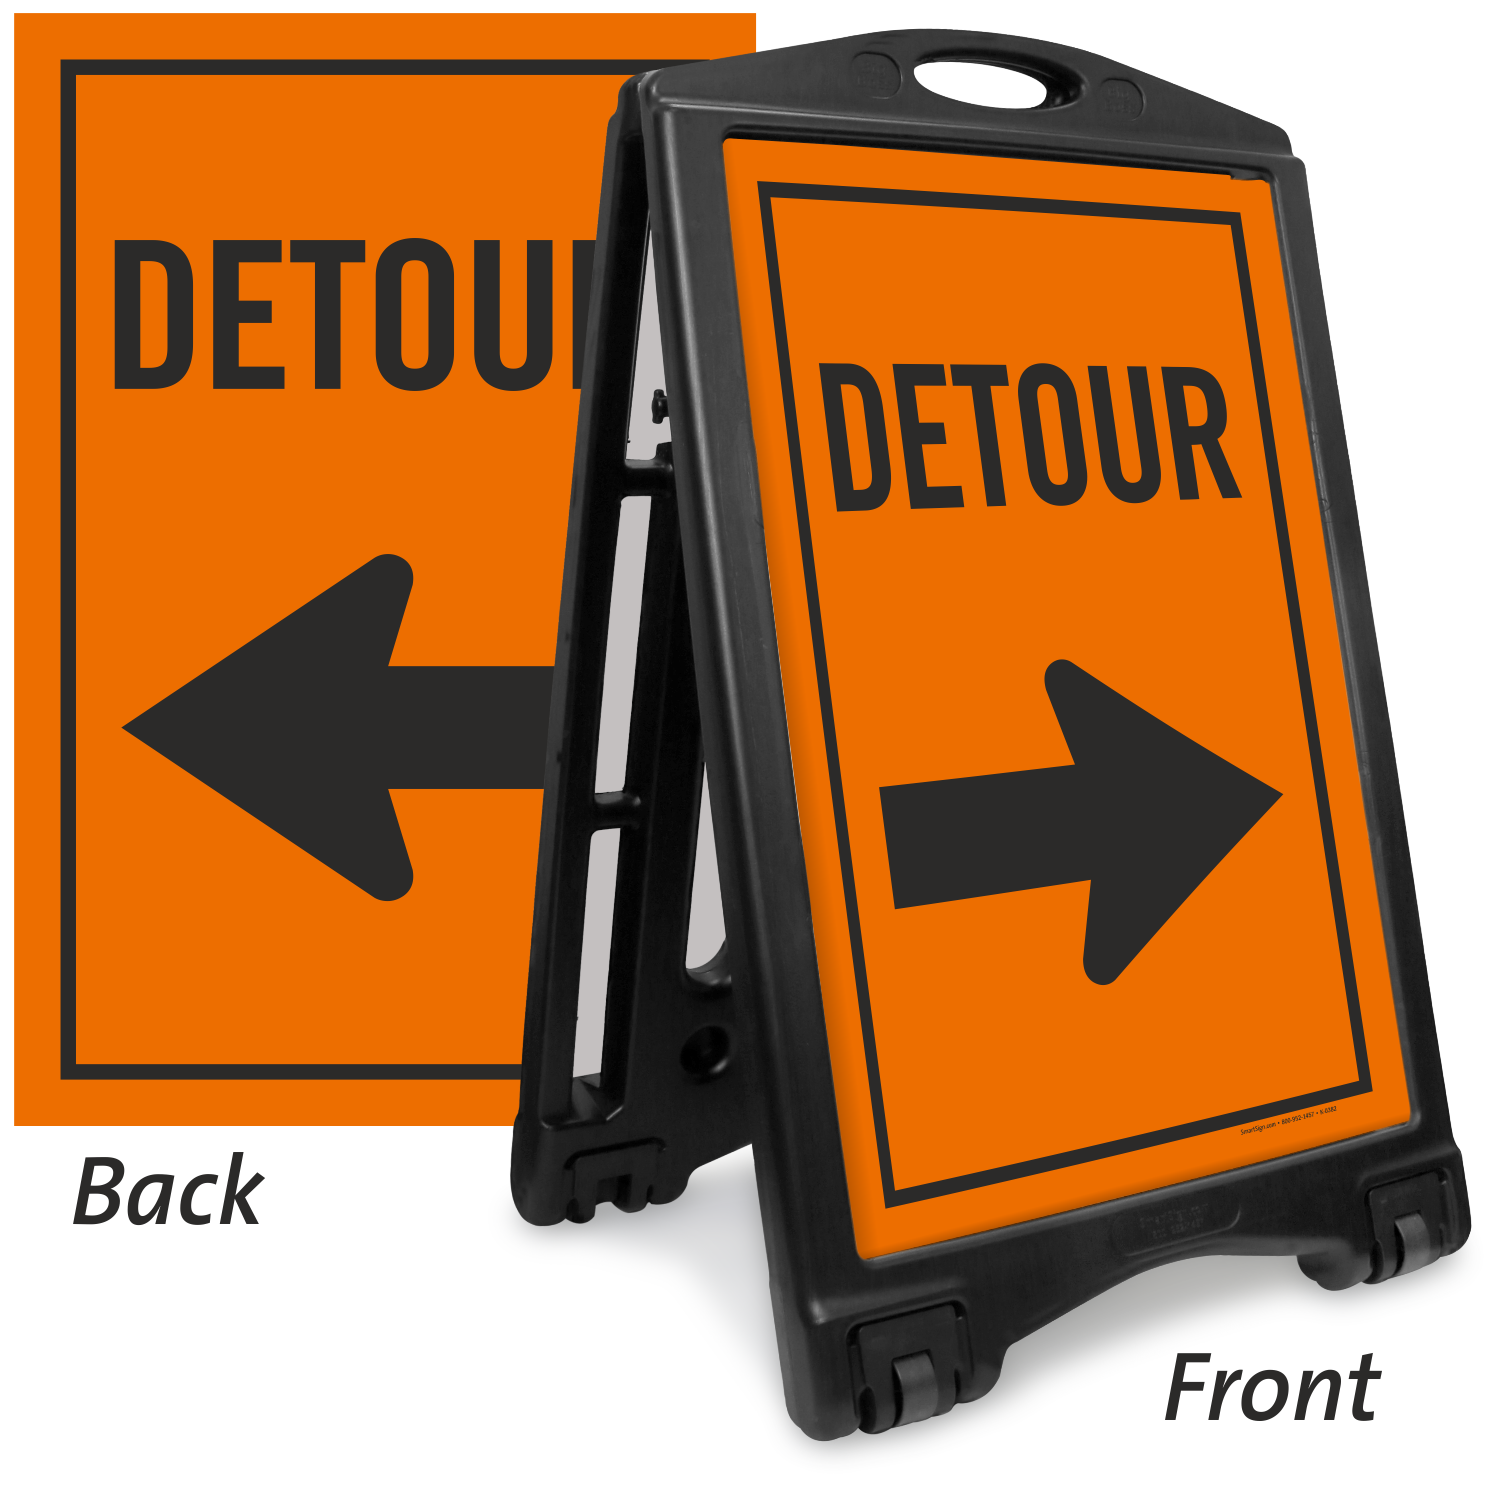 Detour Signs Detour Ahead Signs